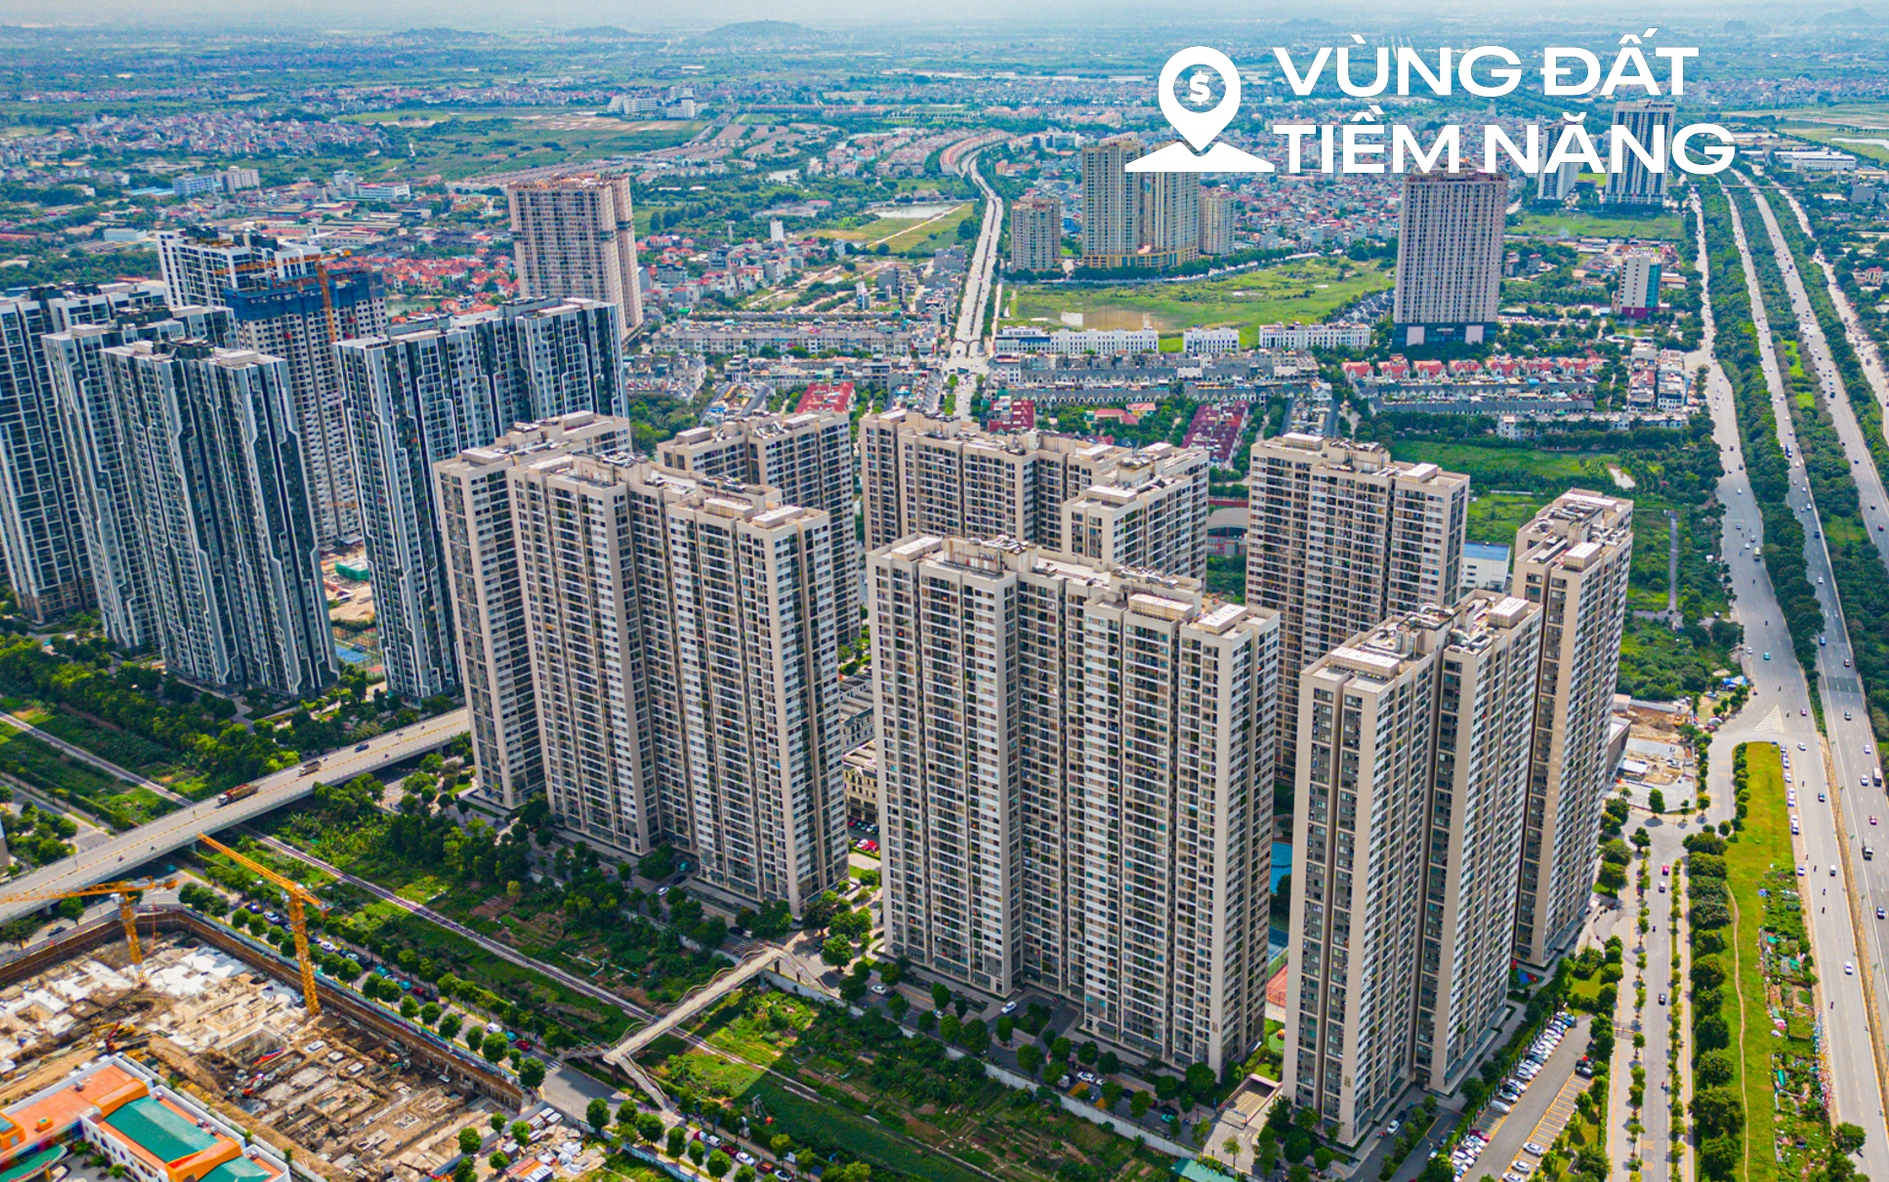 Một quận của Hà Nội thay đổi kinh ngạc sau 10 năm, là “điểm nóng” phát triển bất động sản, Vinhomes và hàng loạt ông lớn đến đầu tư